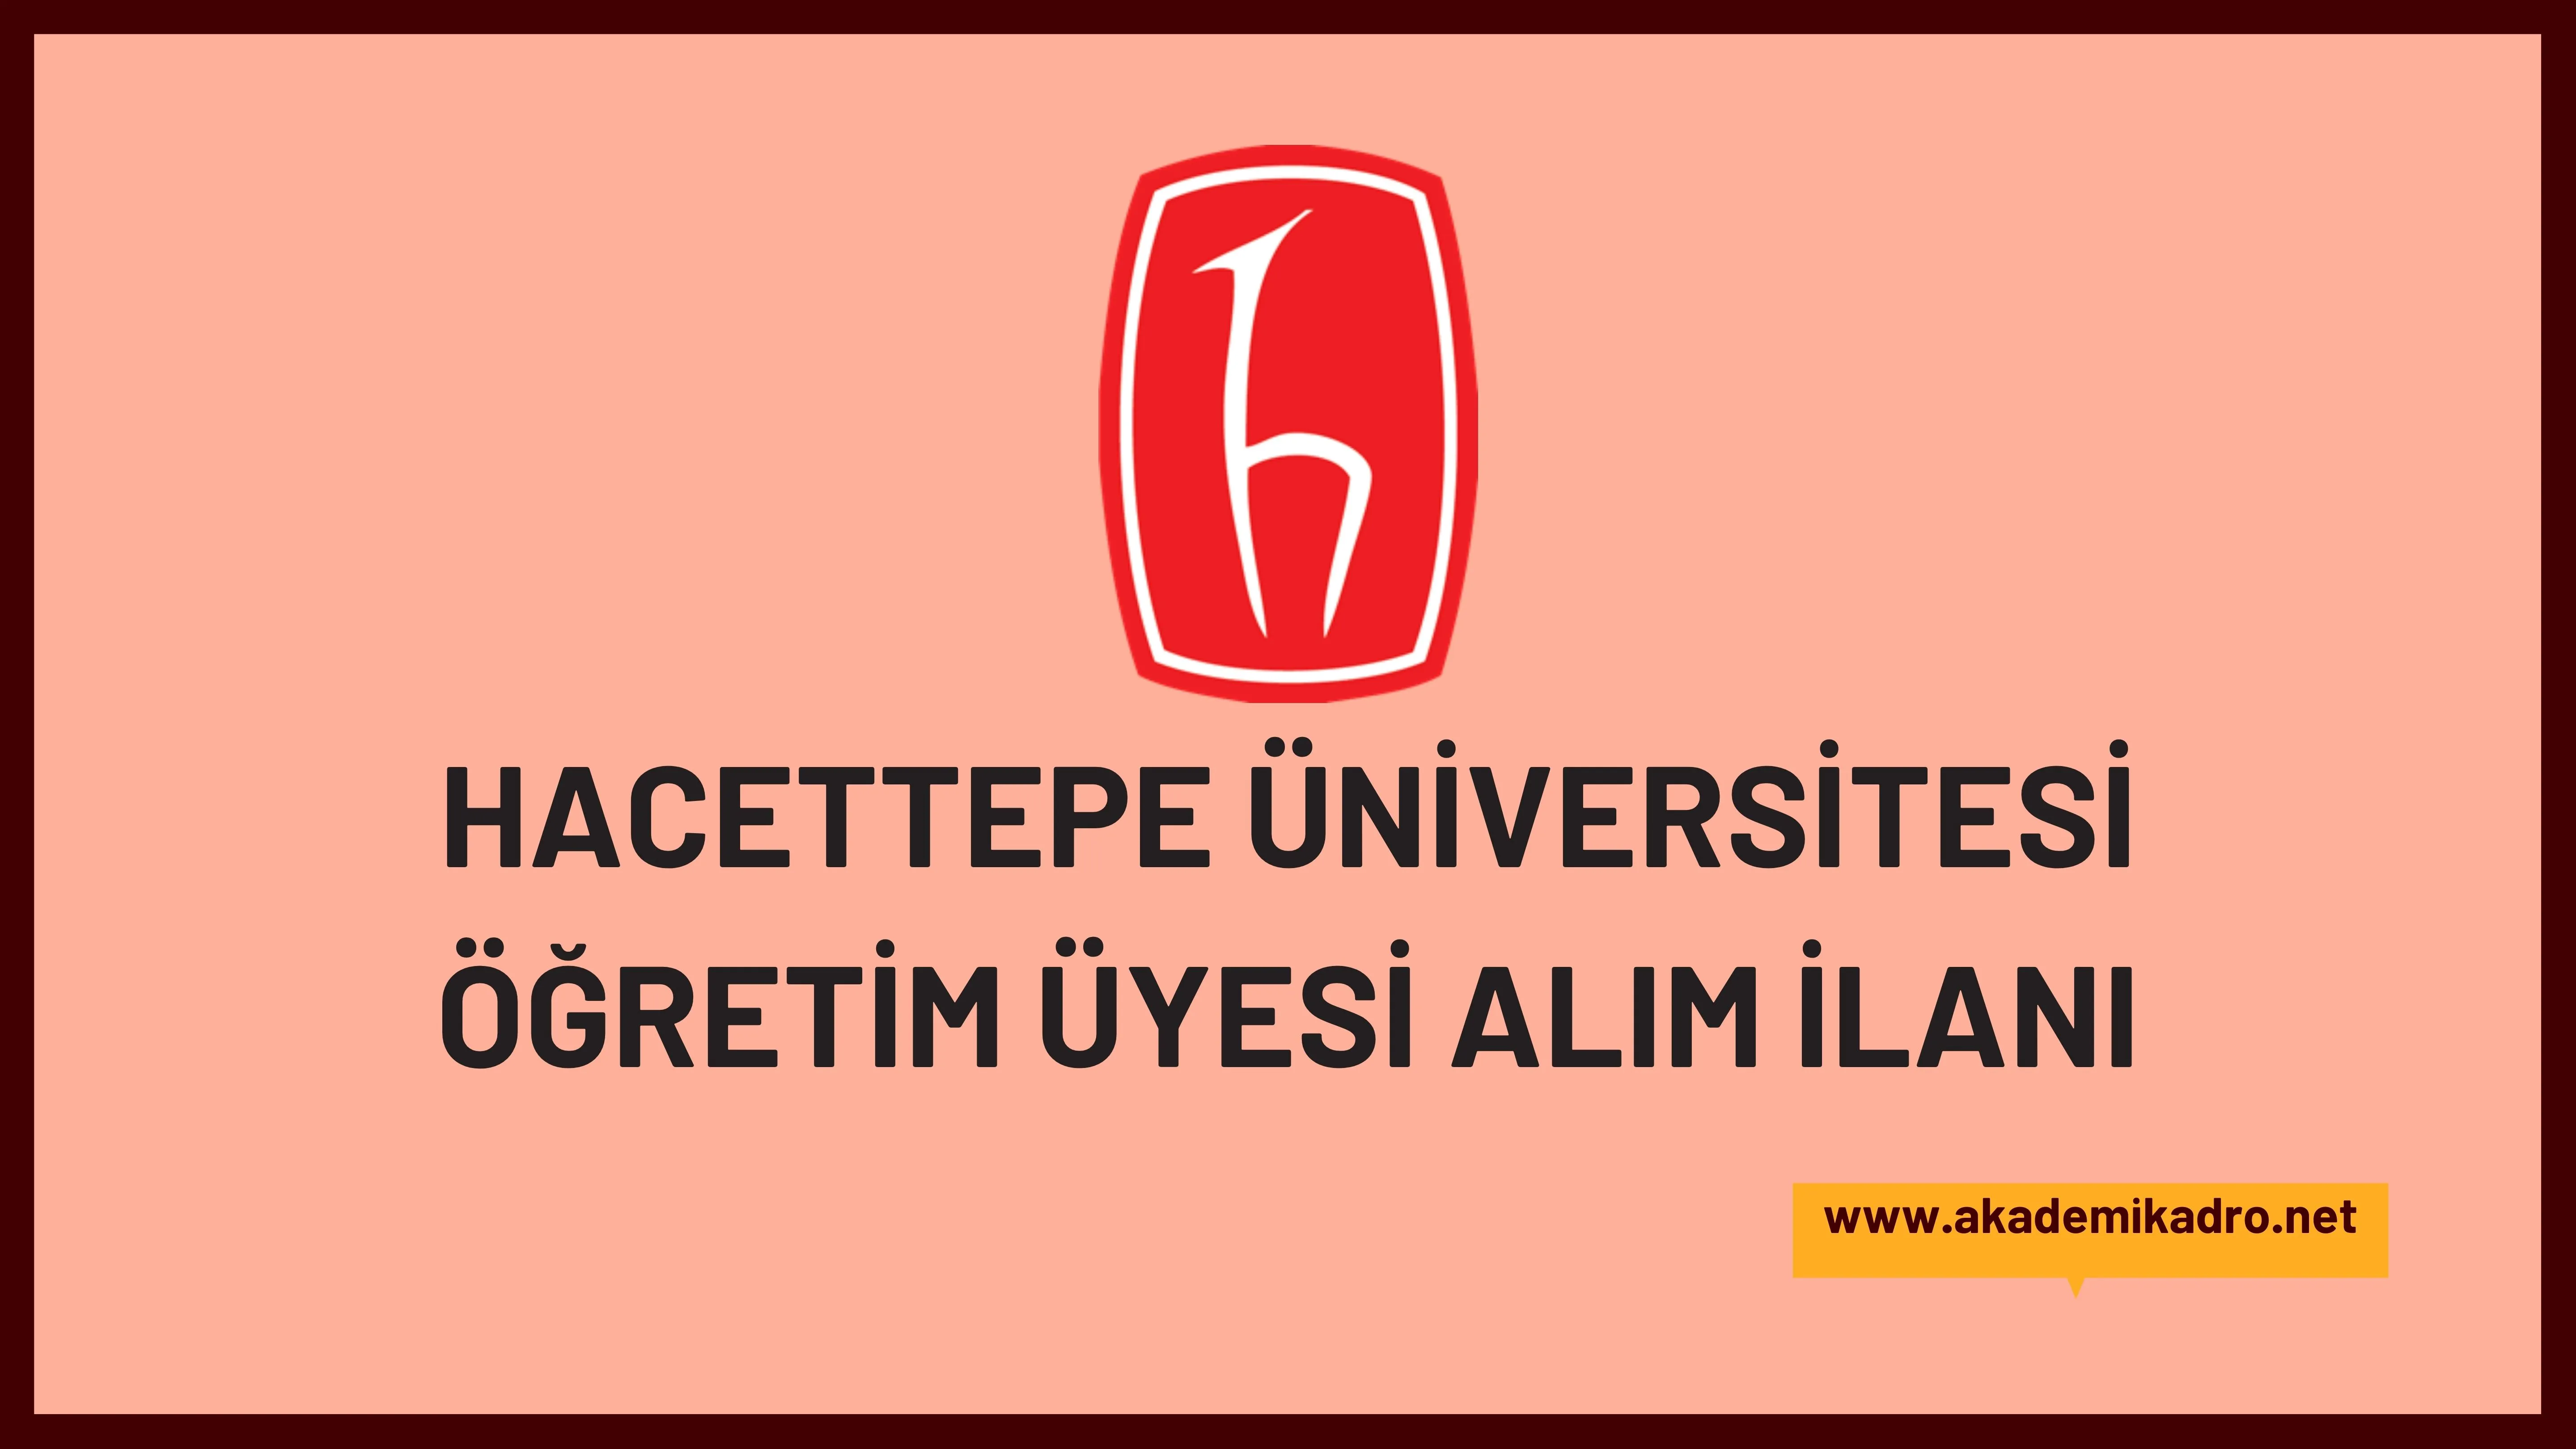 Hacettepe Üniversitesi 44 akademik personel alacak.